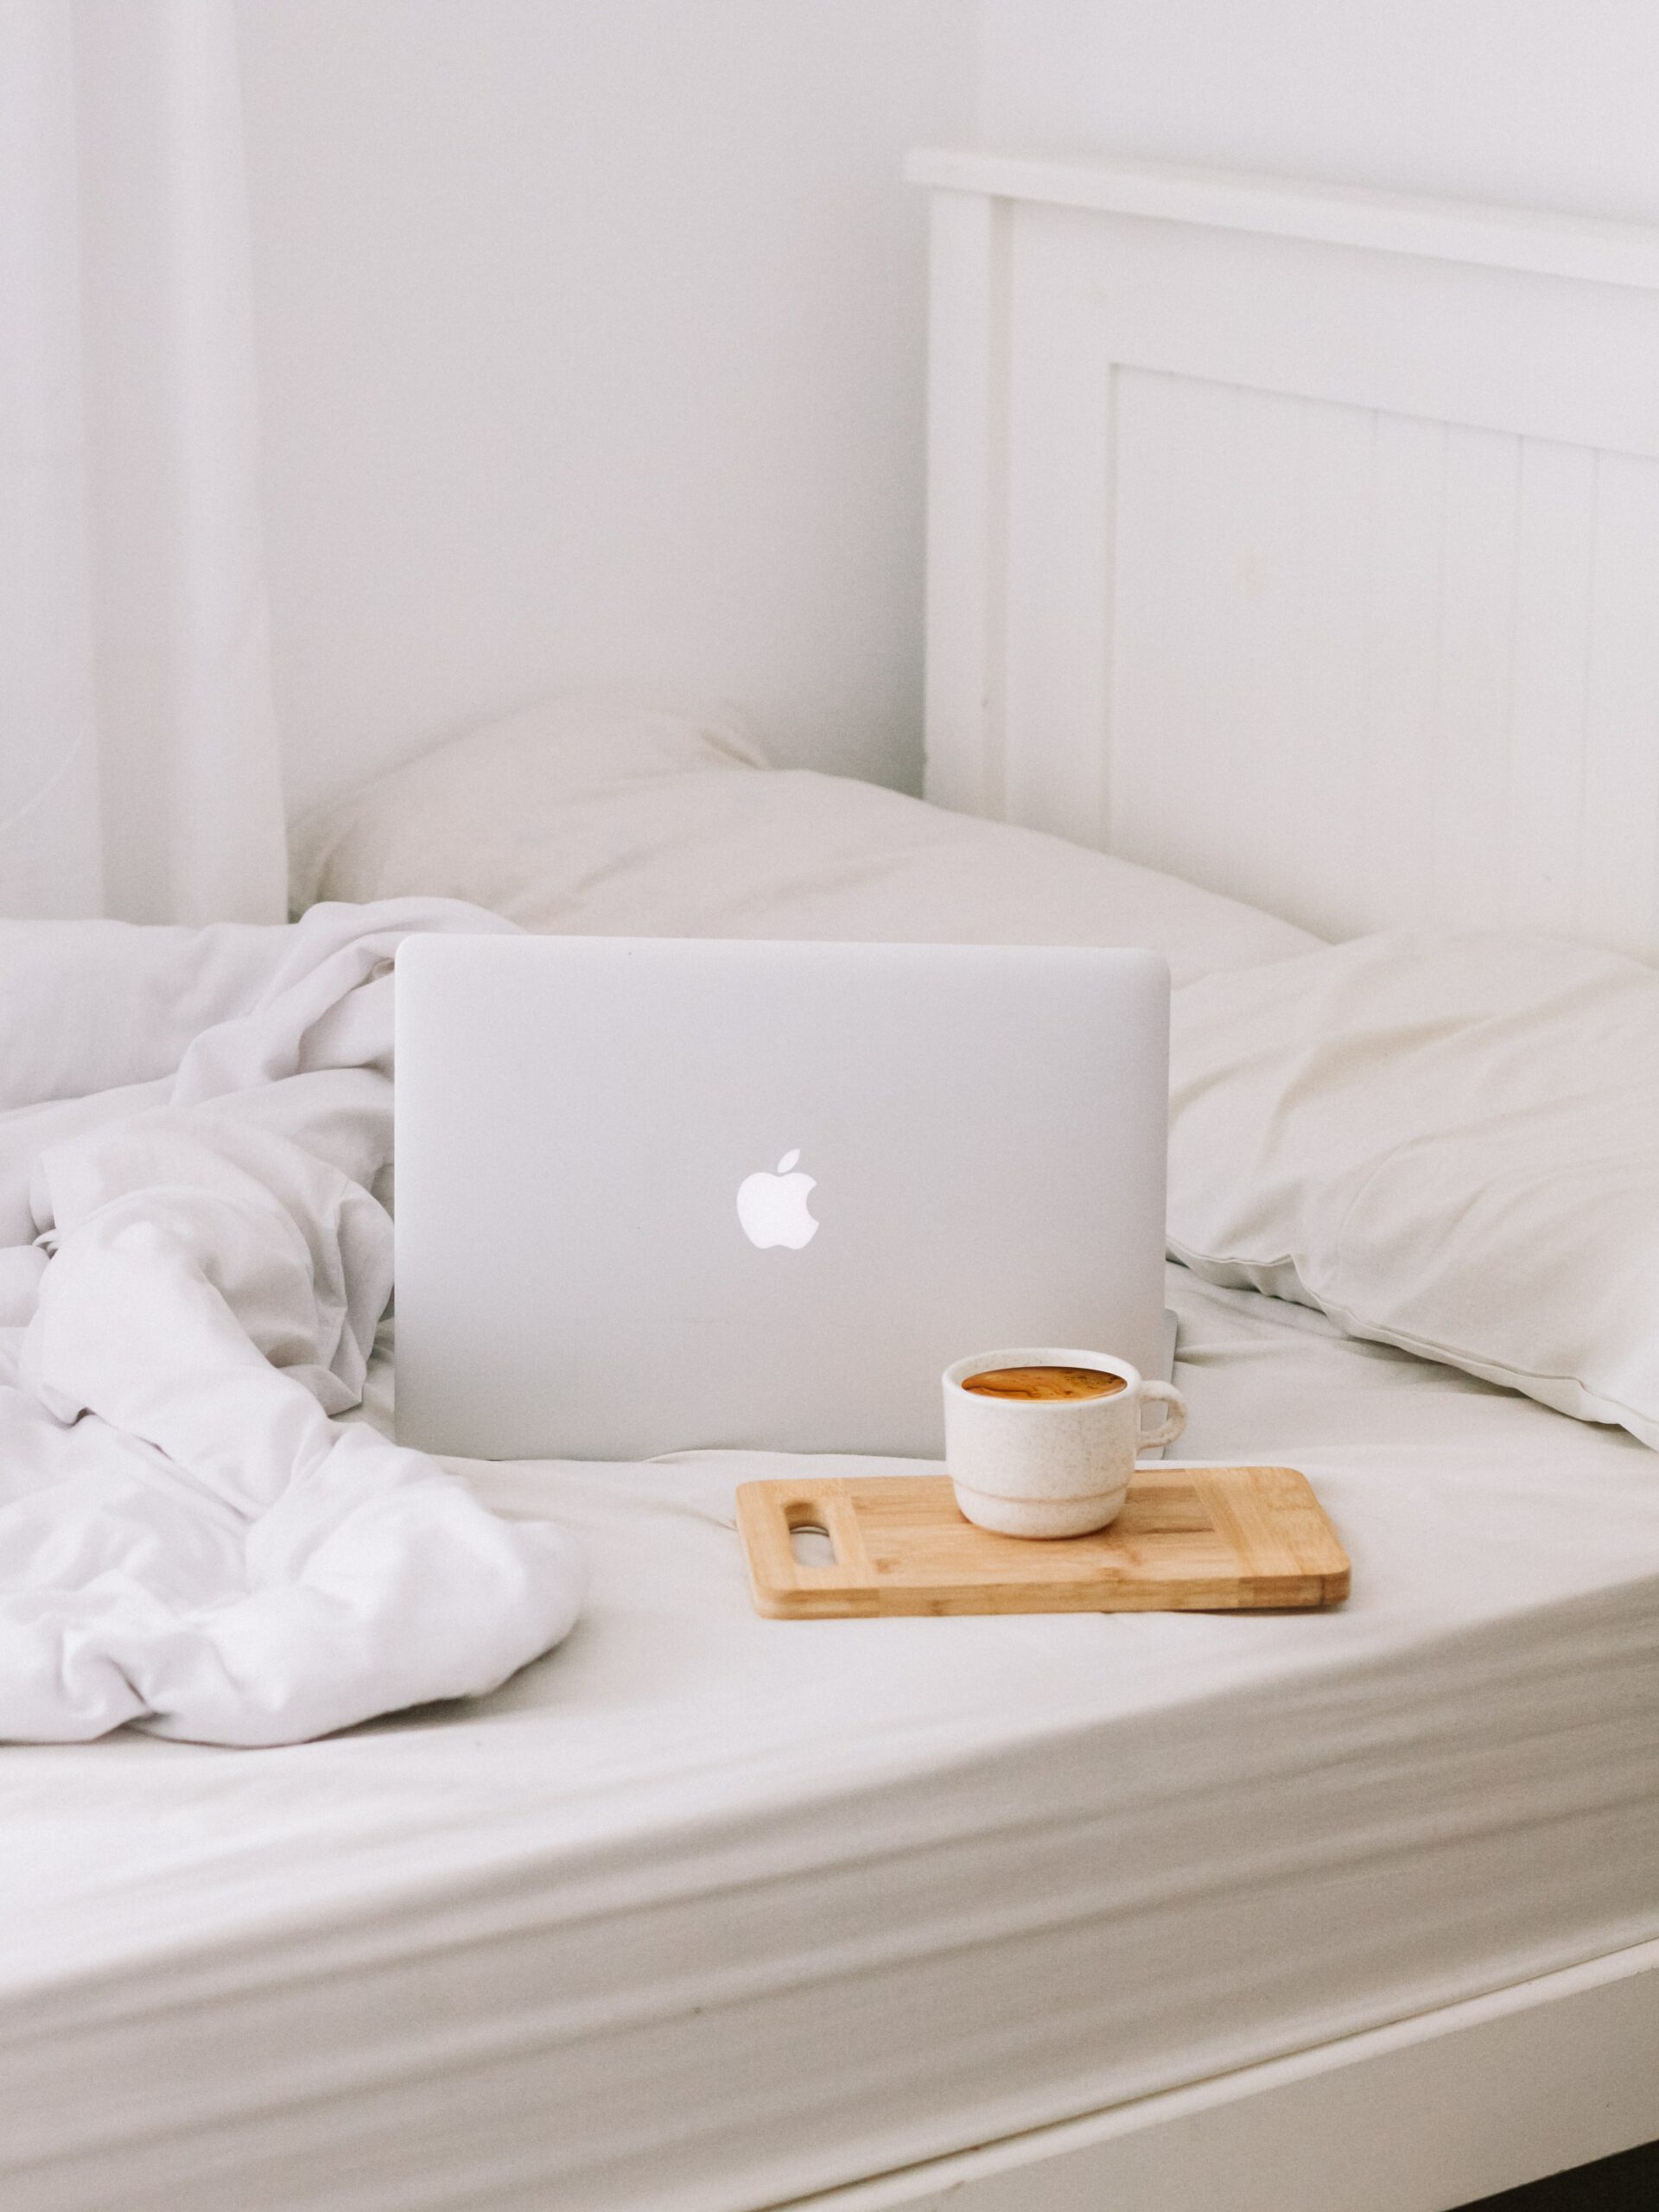 מחשב של אפל על מיטה עם מגש כוס קפה ליד לבניית אתר בכיף